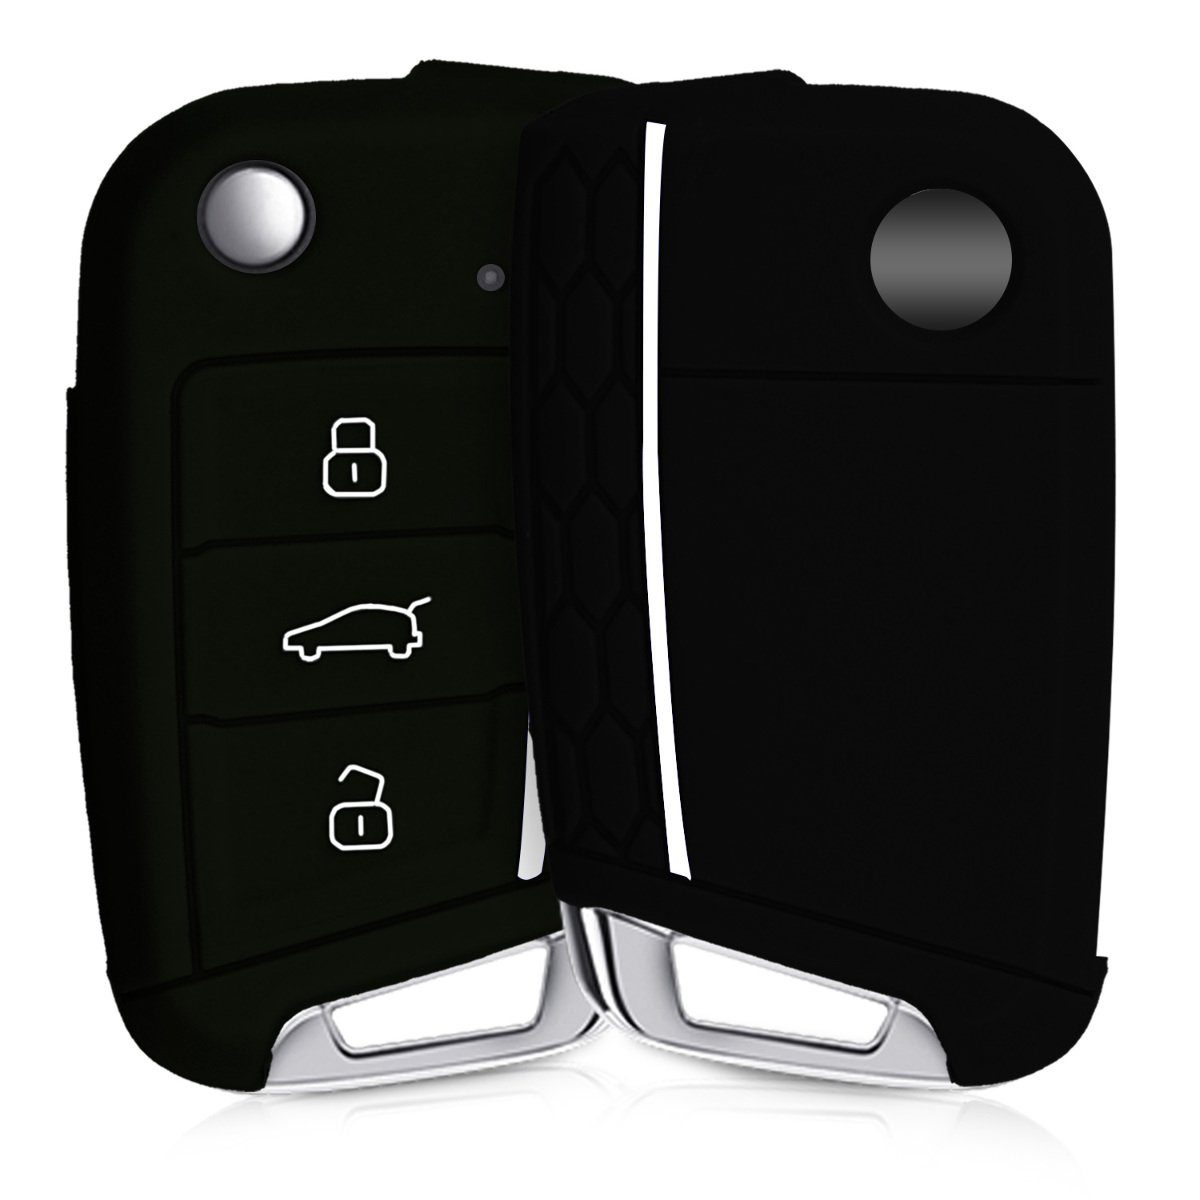 Silikon Schlüsselhülle Schlüssel Cover Autoschlüssel für Case 7 kwmobile MK7, Schwarz-Weiß Golf VW Hülle Schlüsseltasche